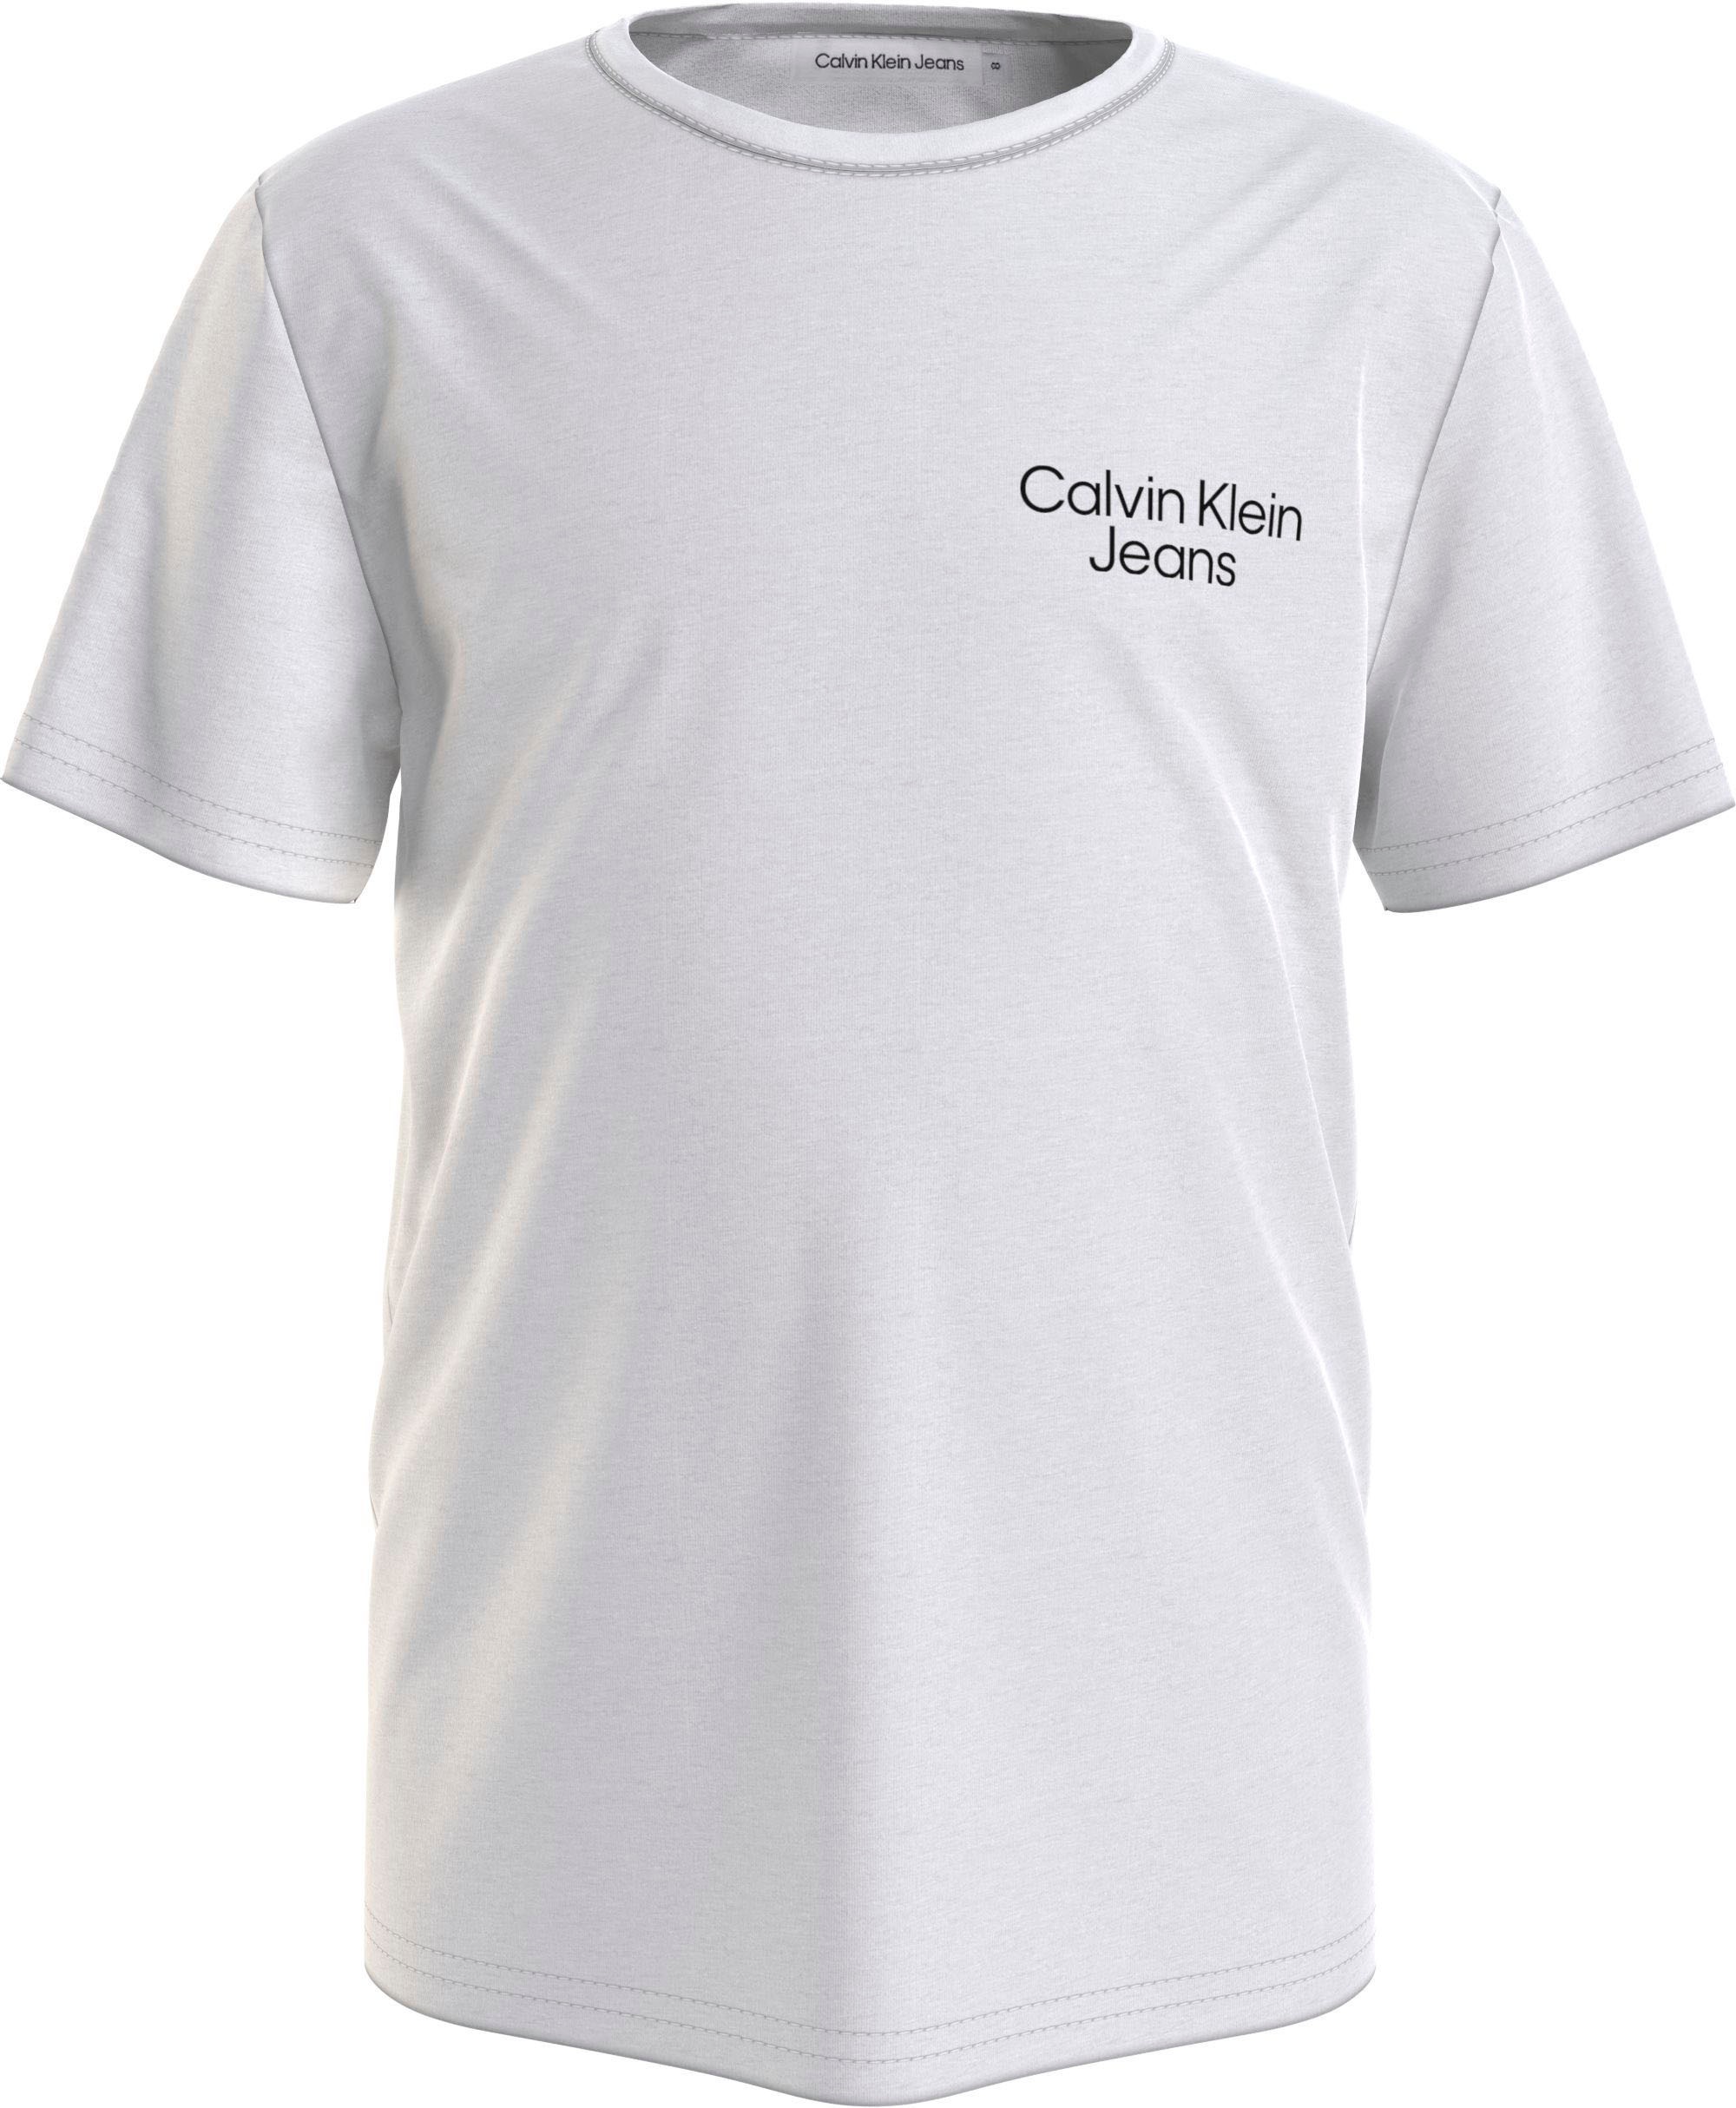 Trendige Calvin Klein Jeans T-Shirt, mit Calvin Klein Logoschriftzug auf  der Brust und am Ärmel ohne Mindestbestellwert shoppen